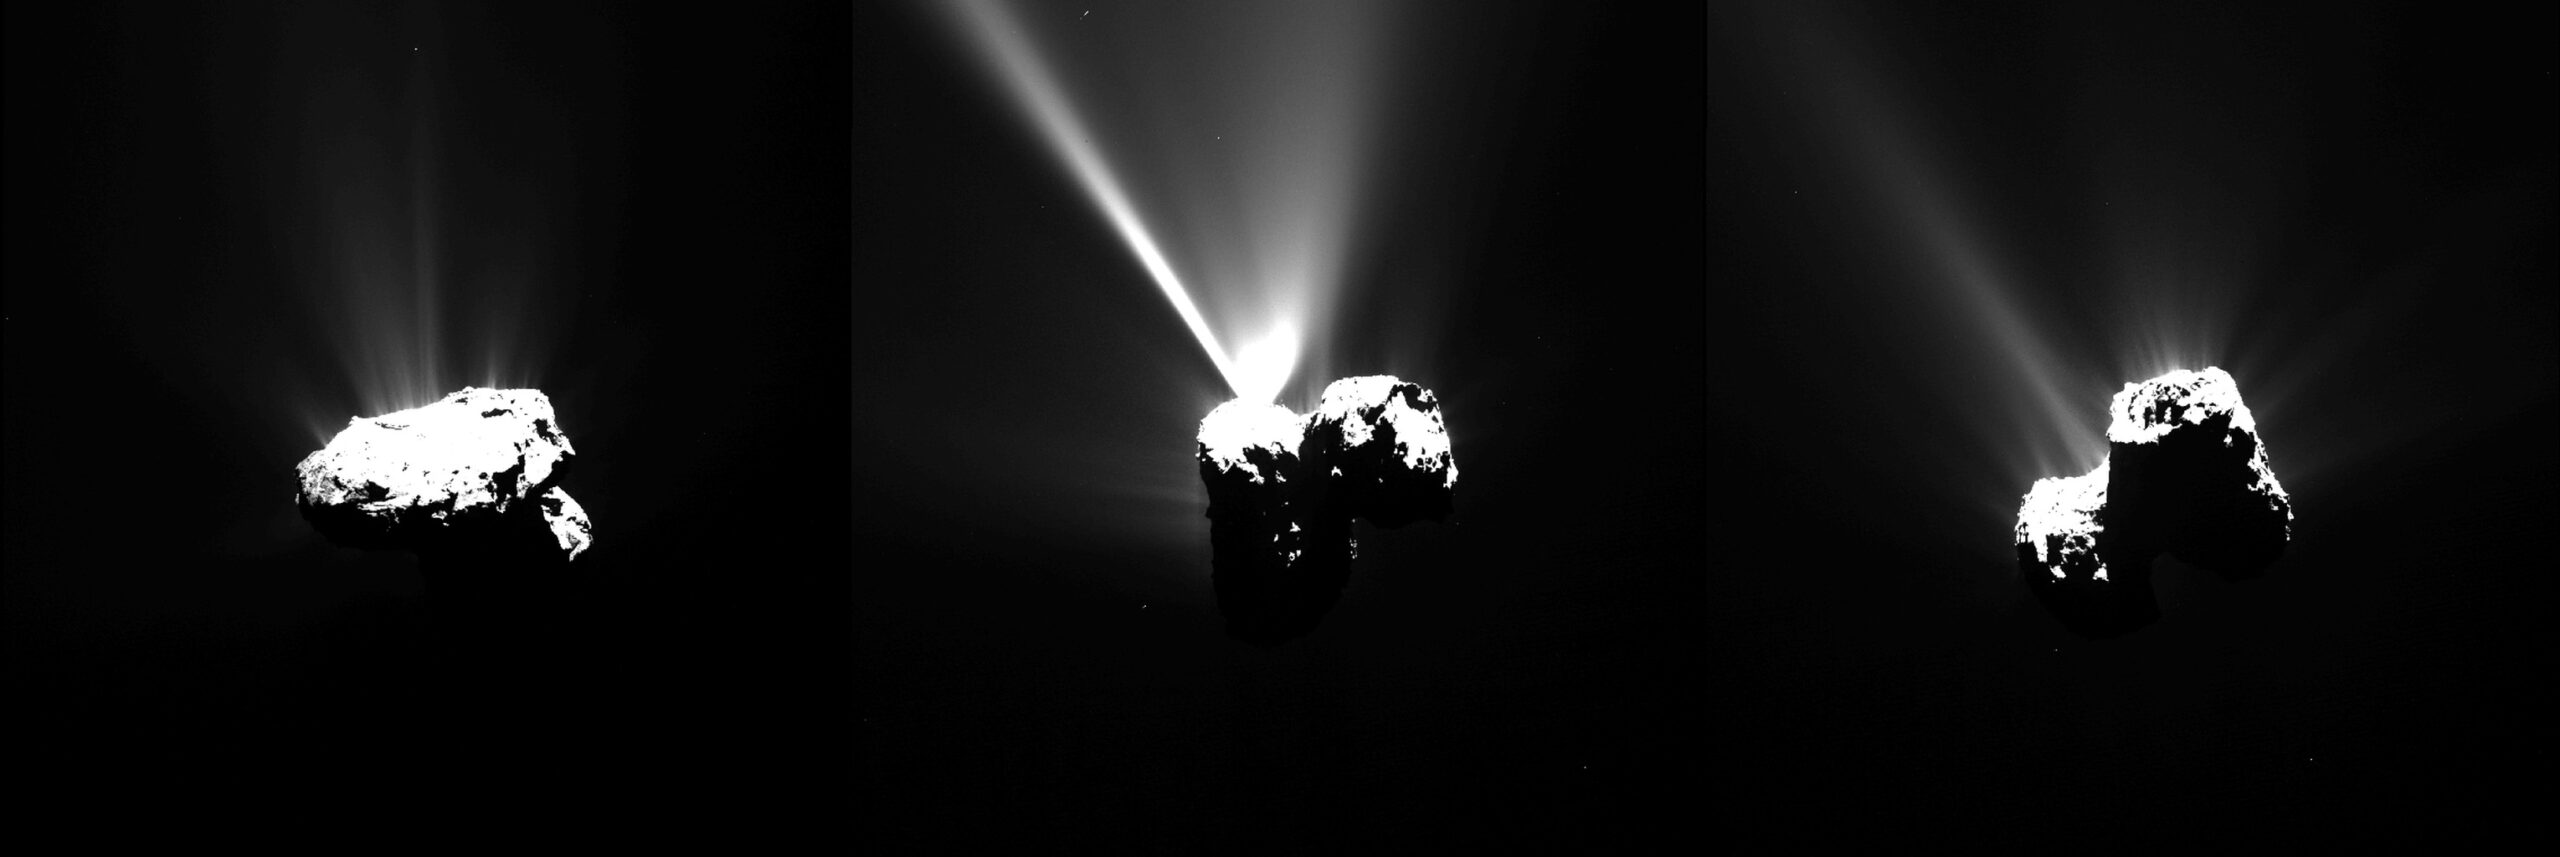 彗星 67P 接近近日点时的罗塞塔图像